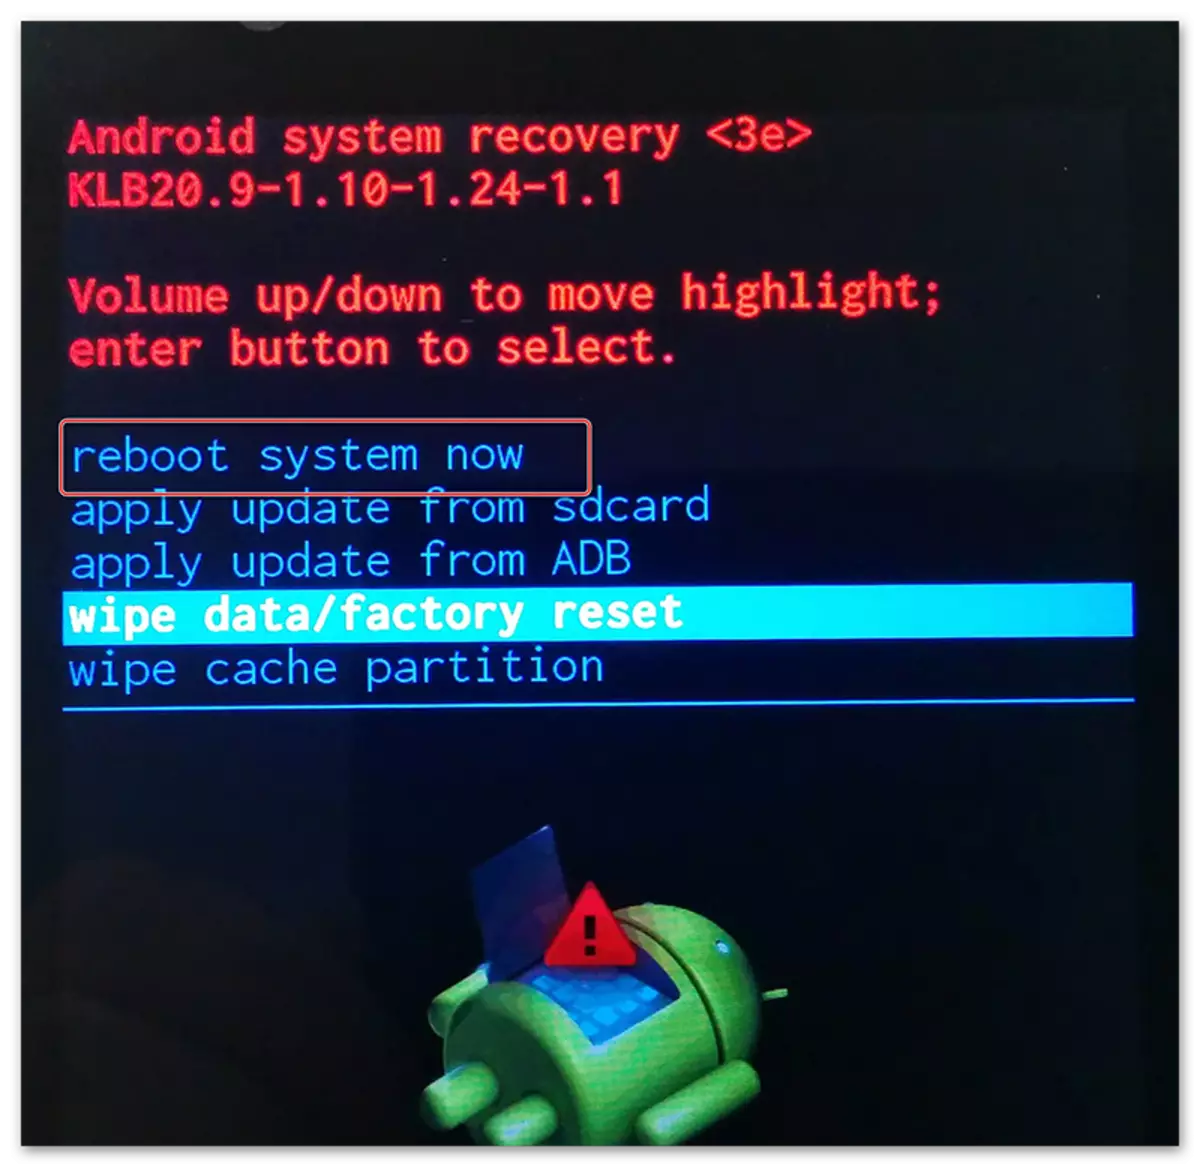 Restart Android vasitəsilə BIOS